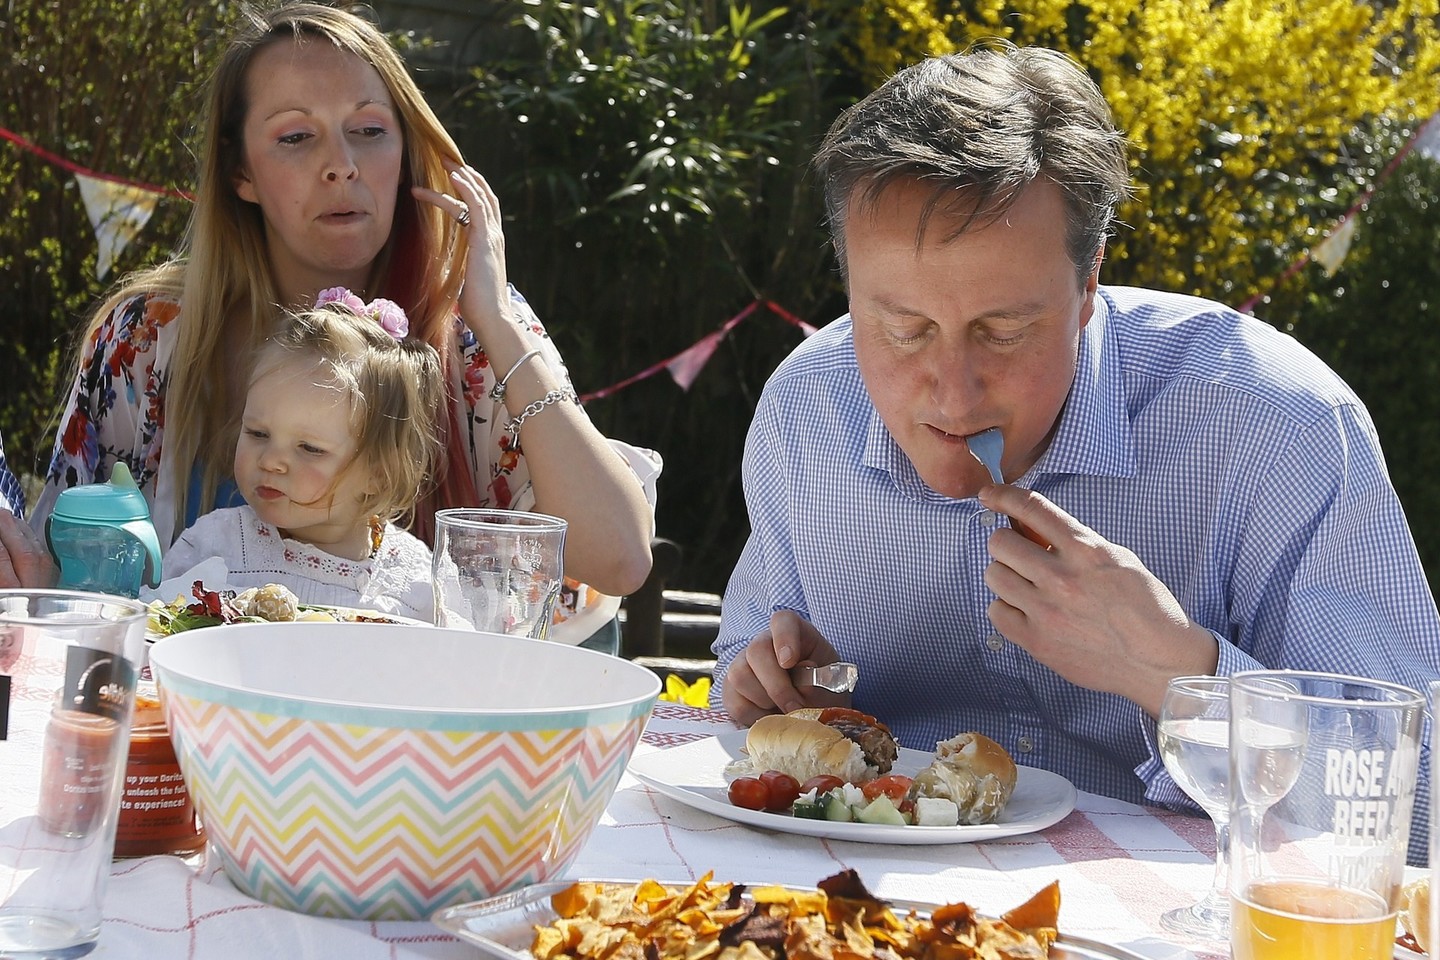 D.Cameronas buvo pavadintas snobu dėl dešrainio valgymo peiliu ir šakute.<br>AFP/“Scanpix“ nuotr.